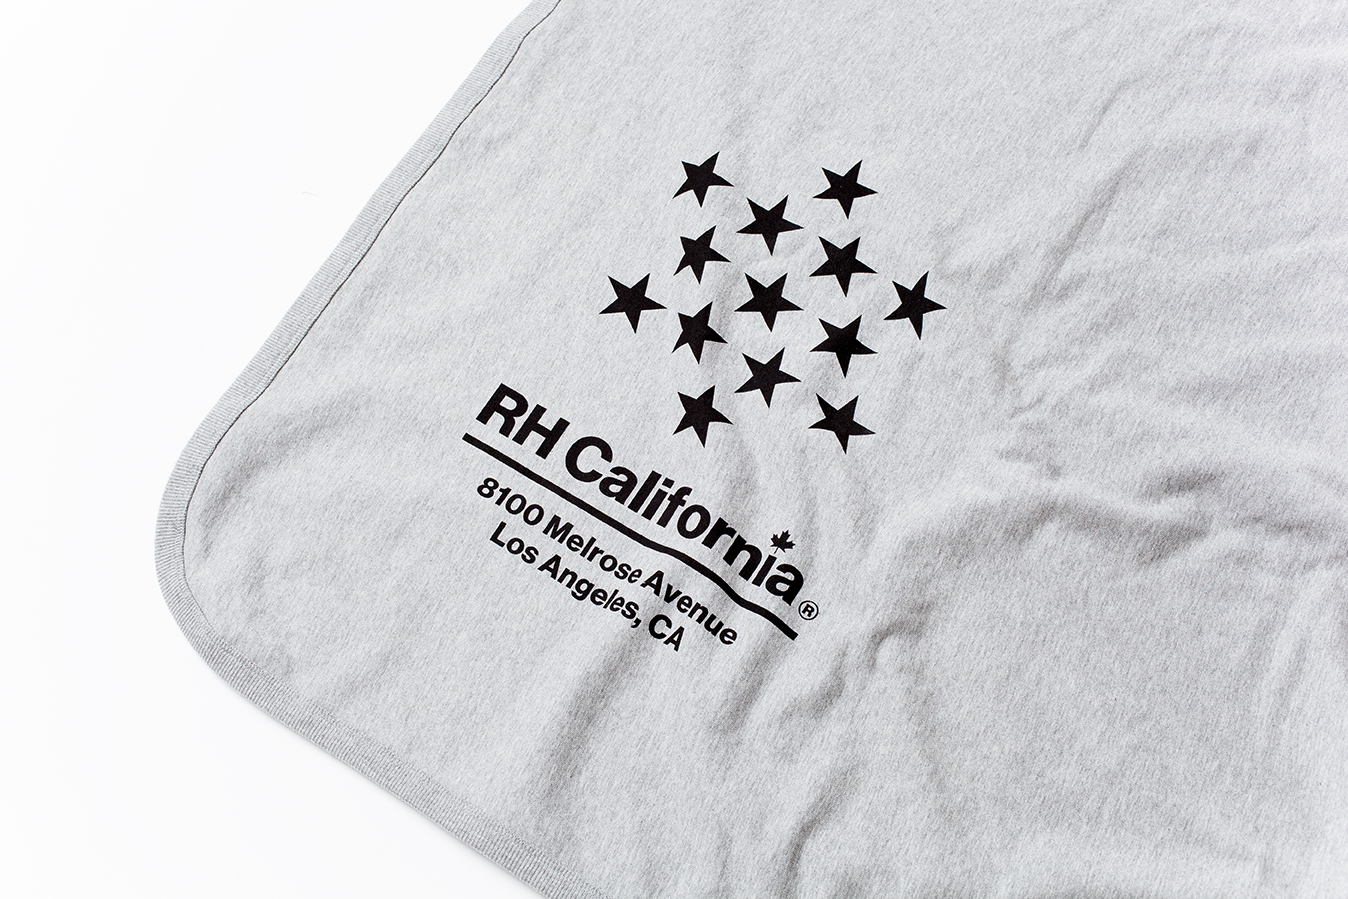 REIGNING CHAMP for RH California
Blanket